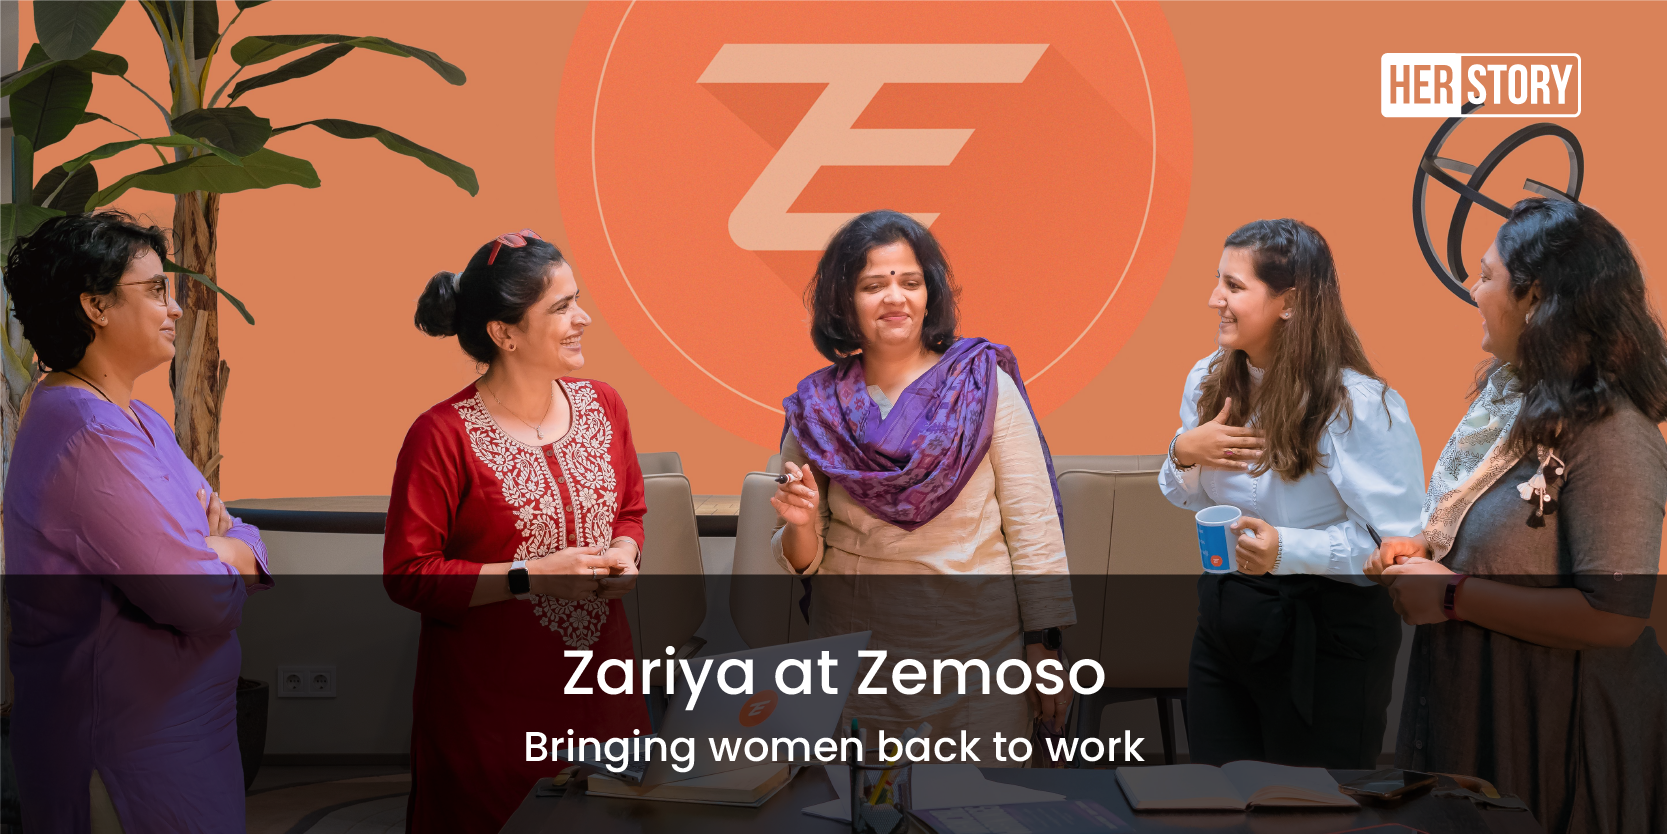 Product studio Zemoso launches ‘Zariya’, an initiative to bring women back to work